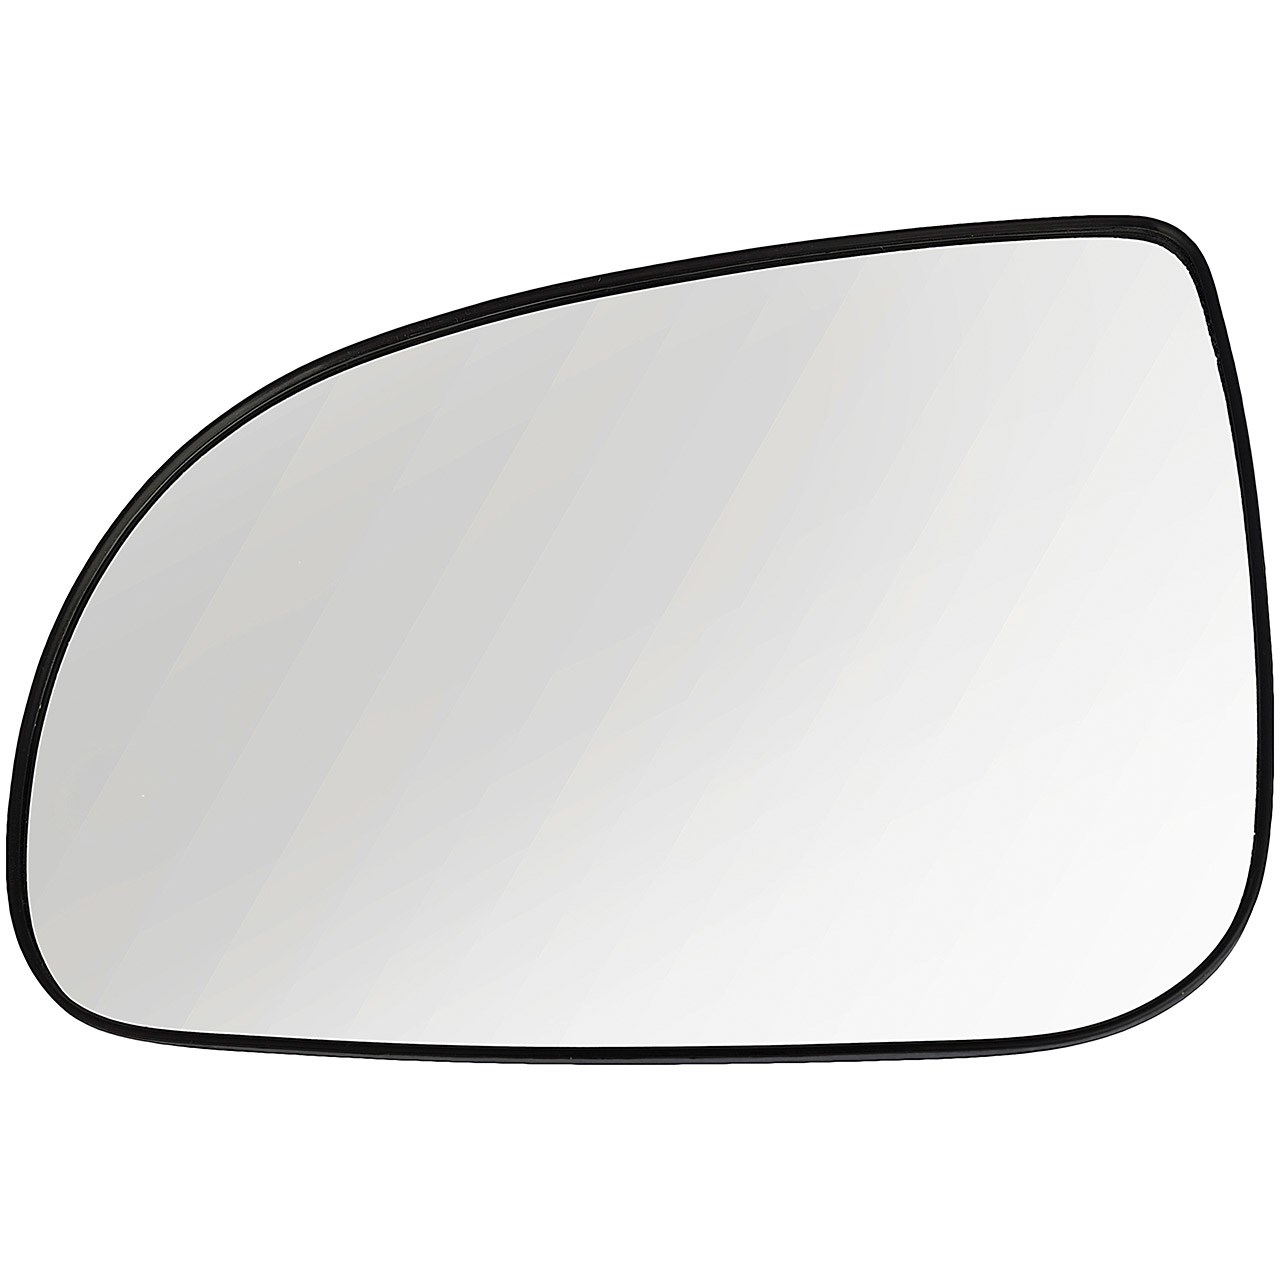 شیشه آینه بغل چپ مدل 8210100U7101XA-01  مناسب برای خودروهای جک